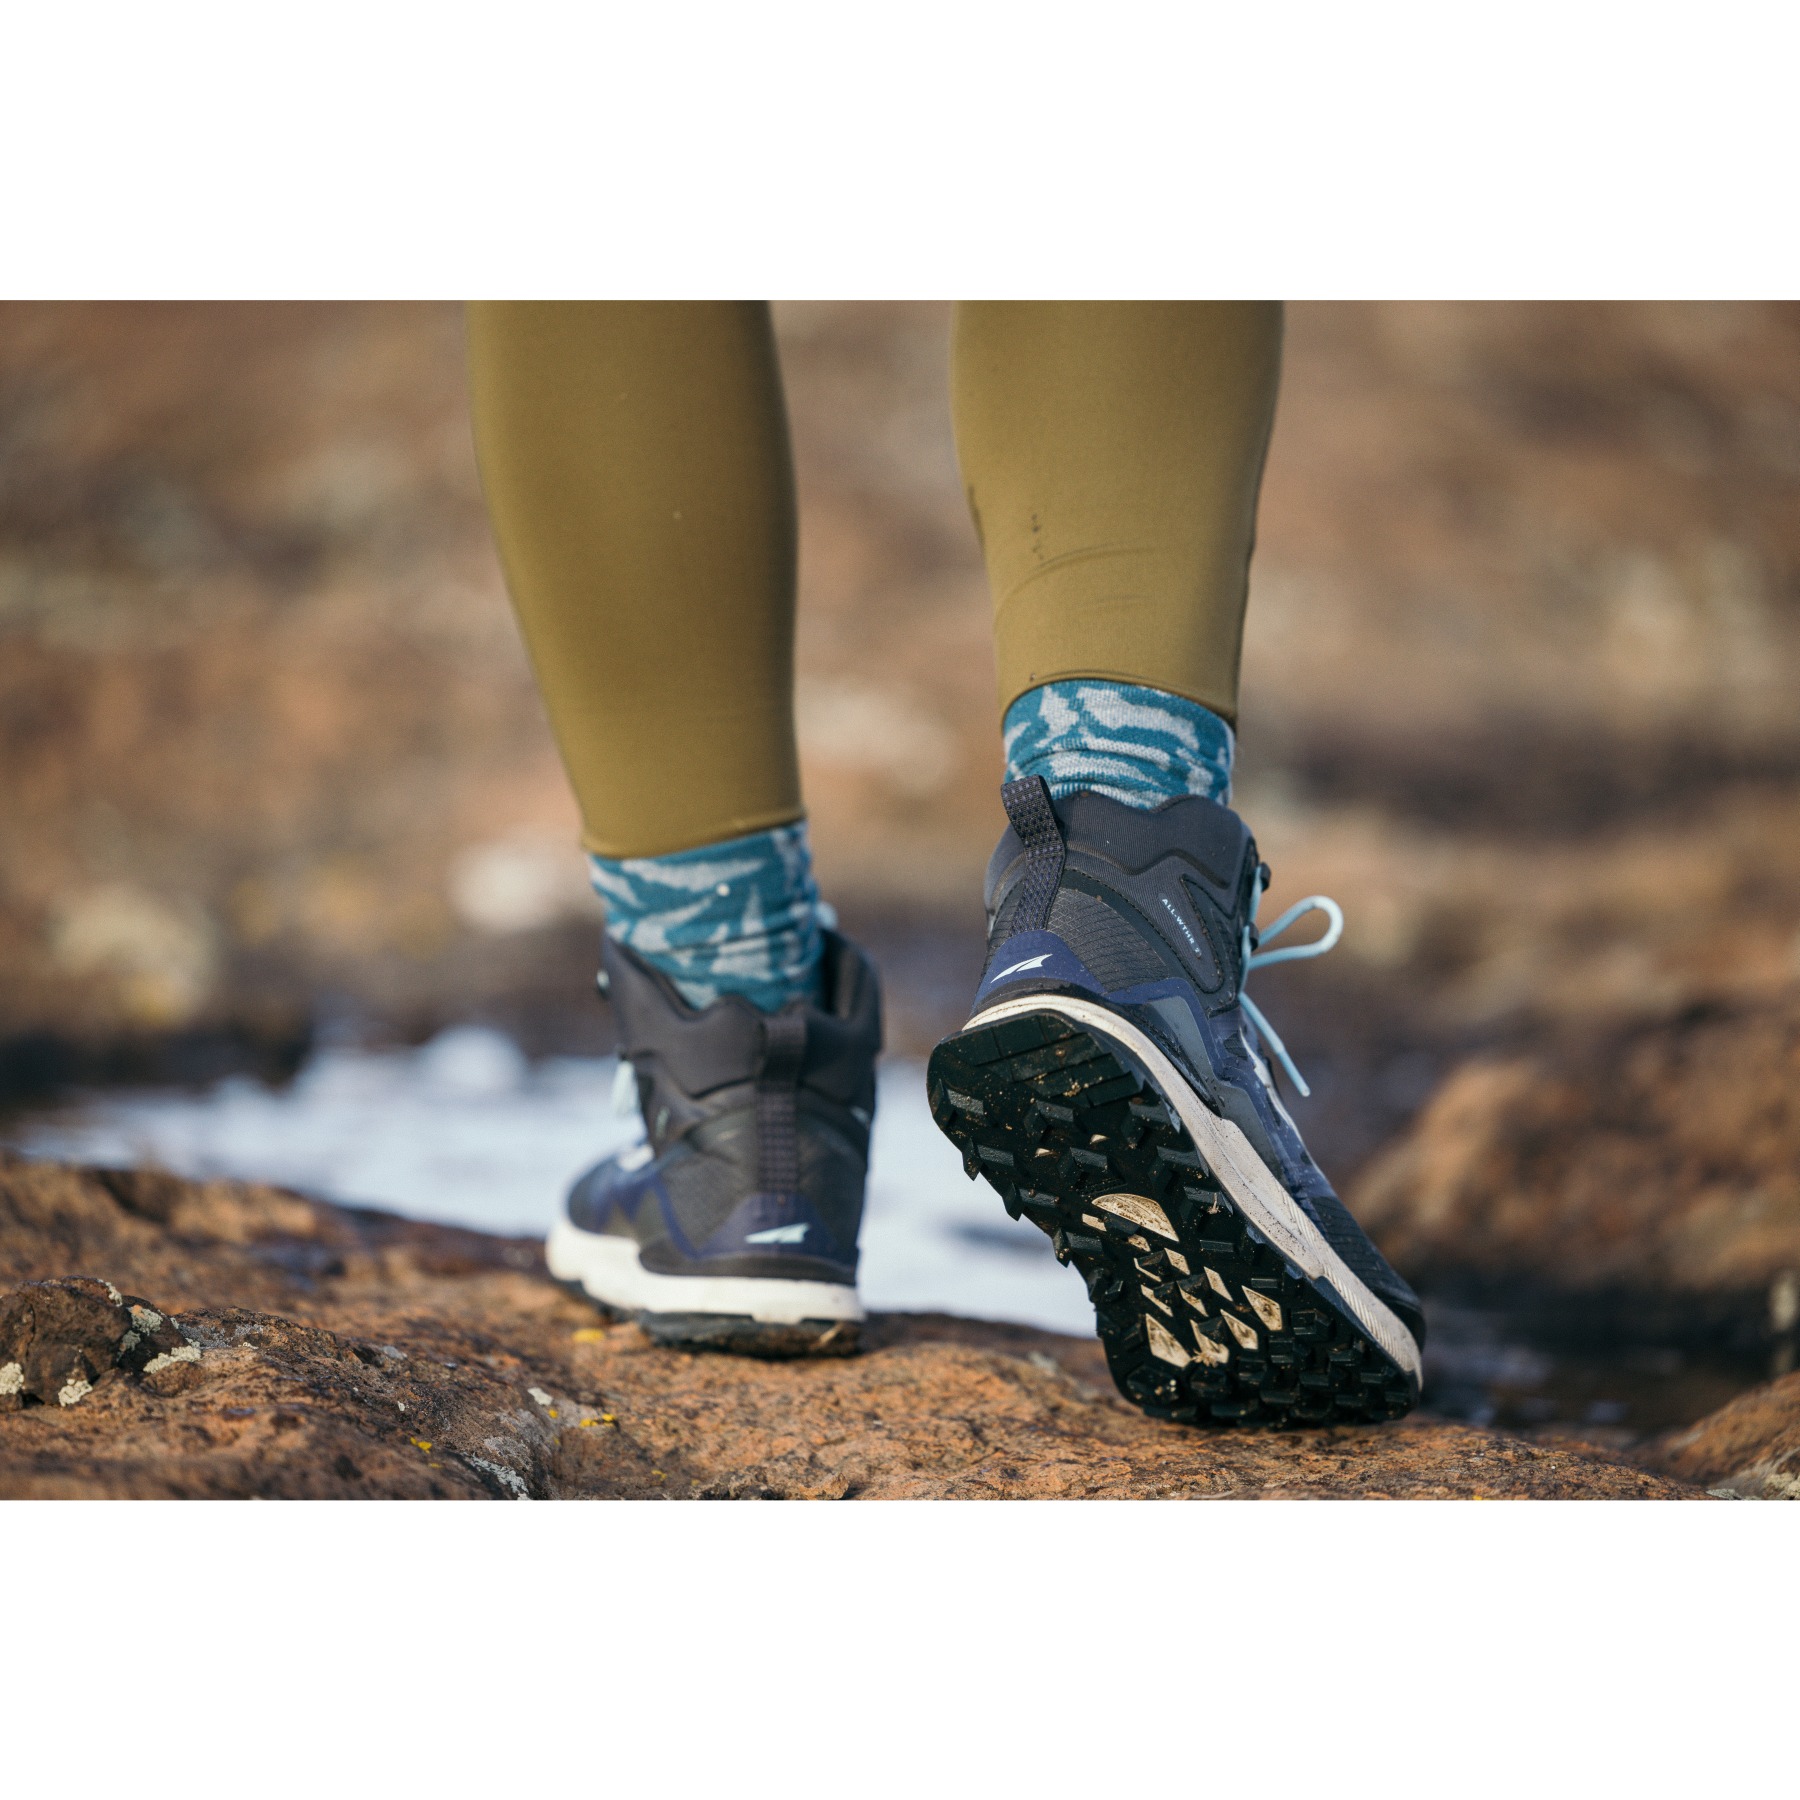 Altra Chaussures Trail Running Femme - Superior 6 - Vert - BIKE24